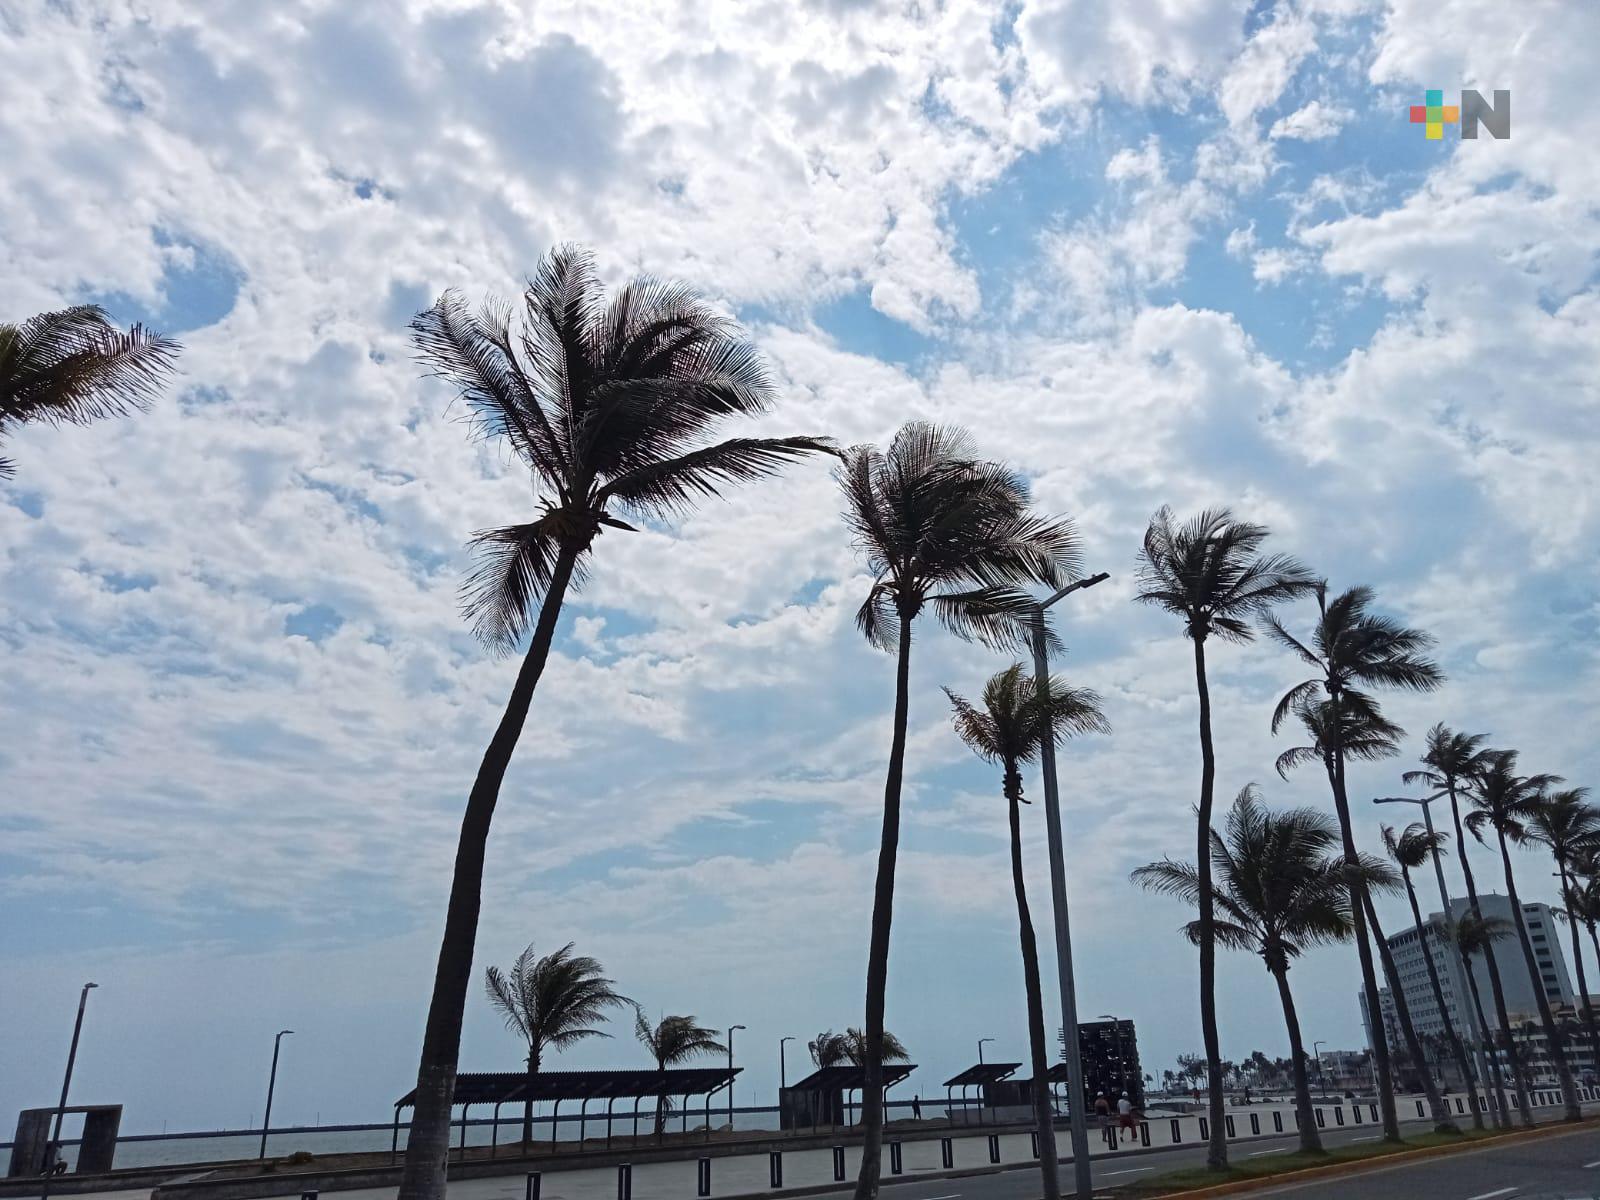 Cielo parcialmente nublado sin descartar lluvias en Veracruz-Boca del Río